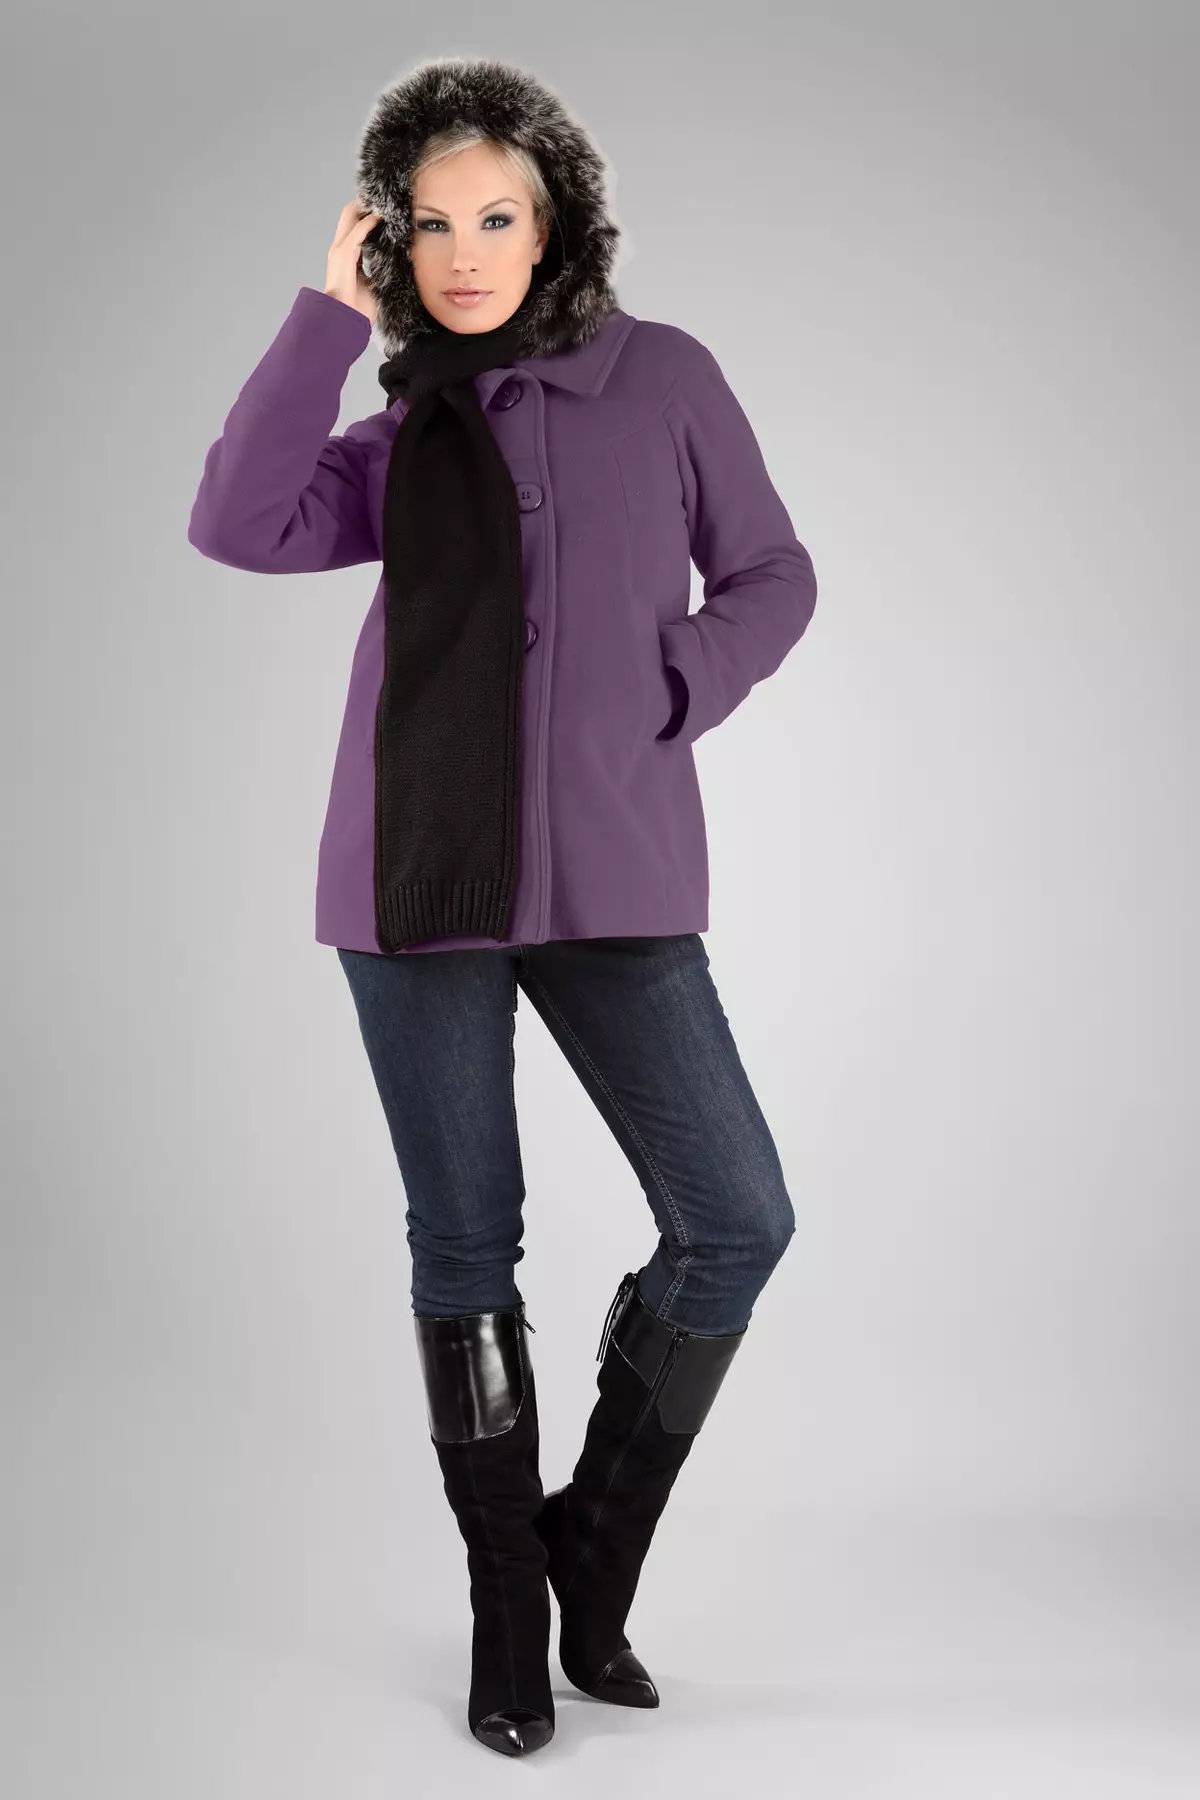 Lilla frakke (31 billeder): Stilfuld kvindelig frakke af mørk lilla farve, hvad en taske og andet tilbehør til det er egnede 494_24